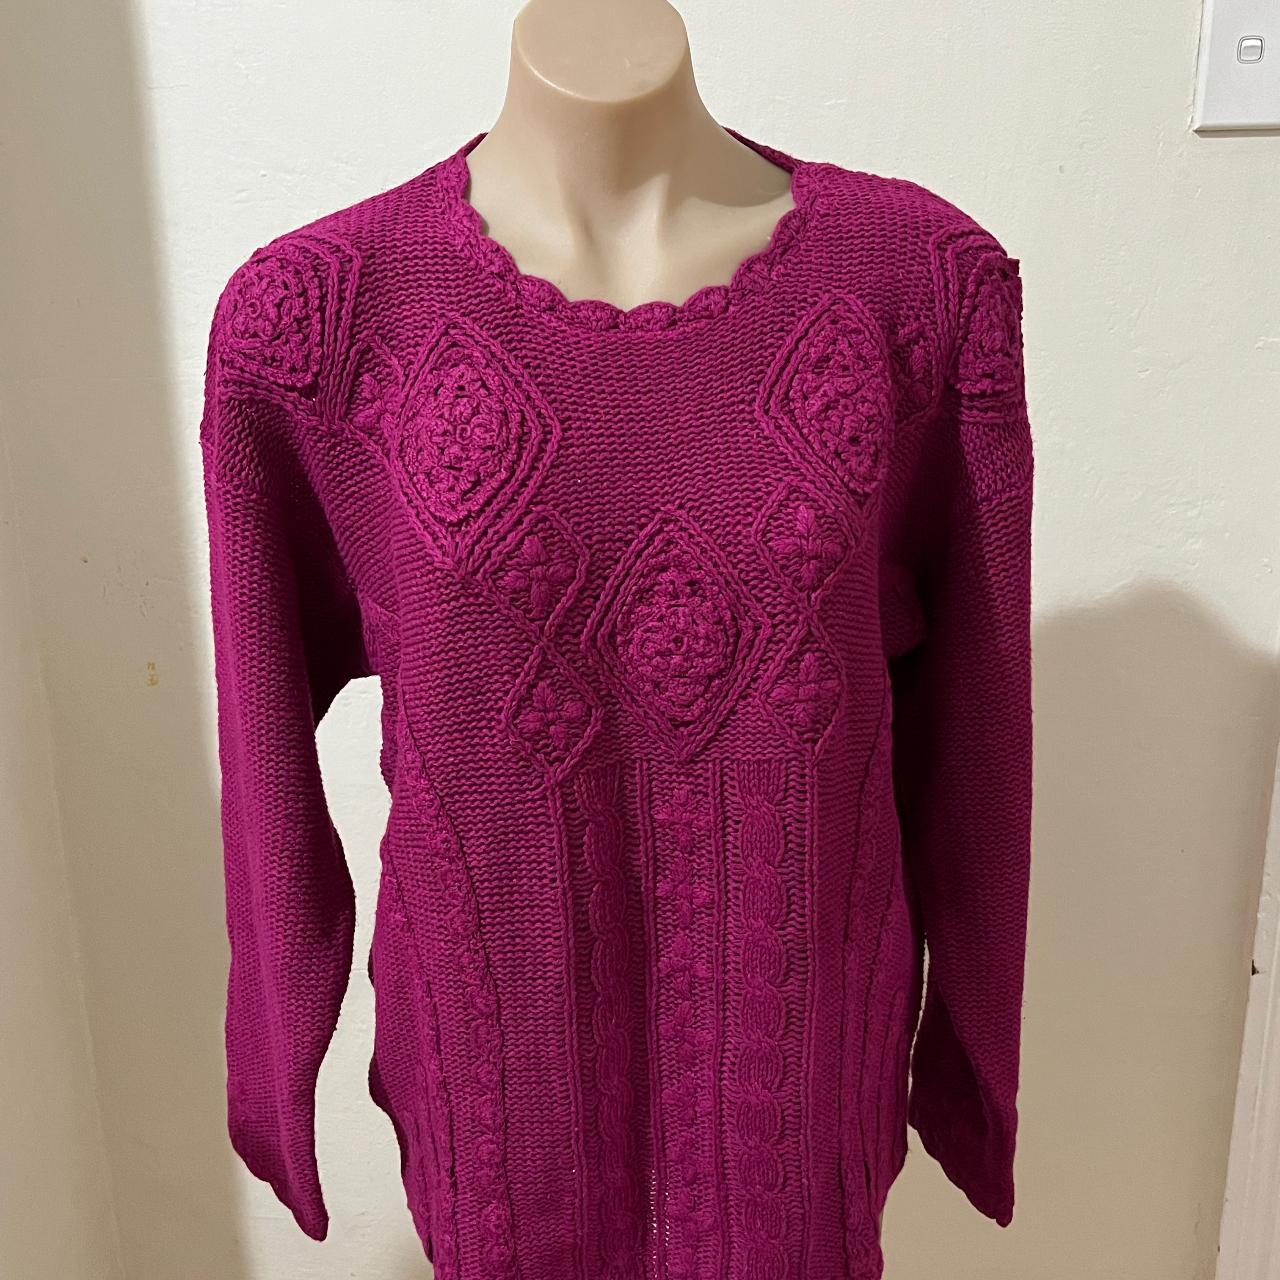 Vintage 80s cable stitch cotton knit sweater /... - Depop